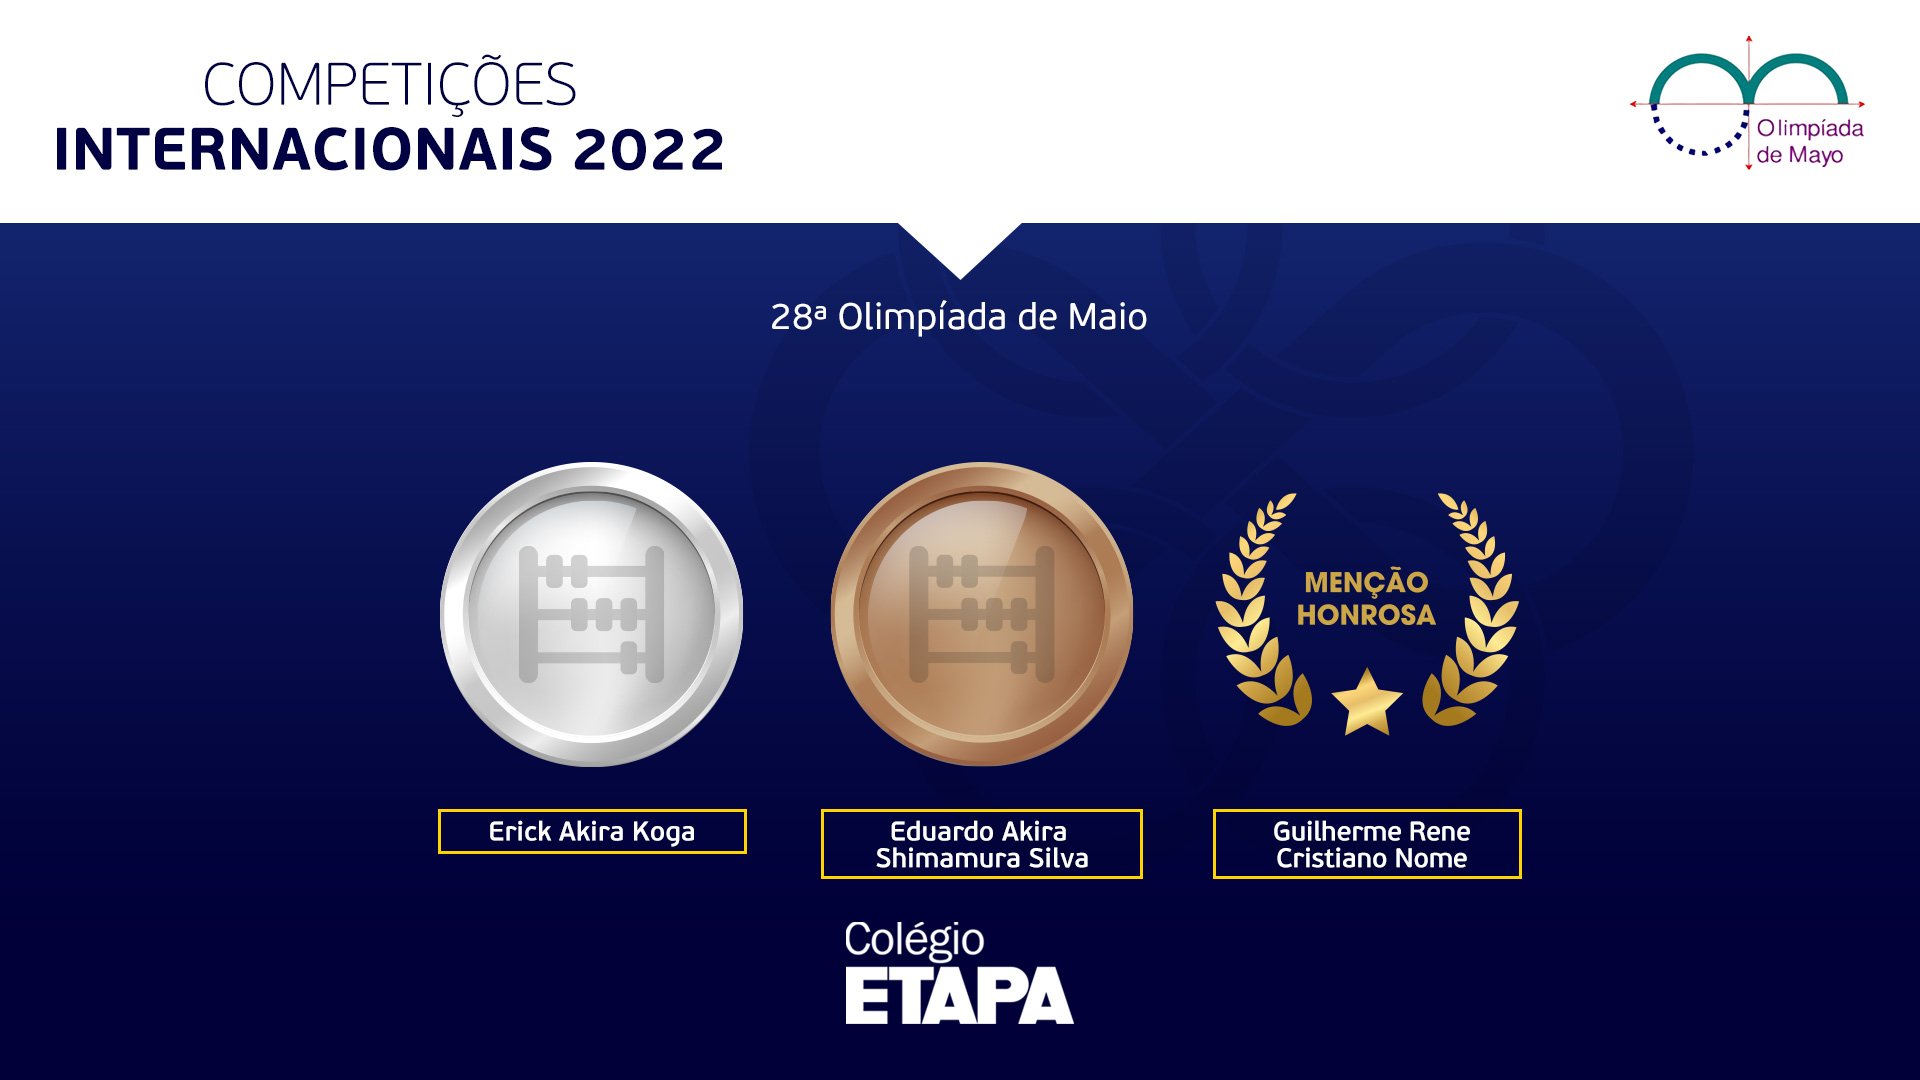 Três alunos do Colégio Etapa conquistaram condecorações na Olimpíada de Maio 2022, que contou com a participação de estudantes de 13 países.